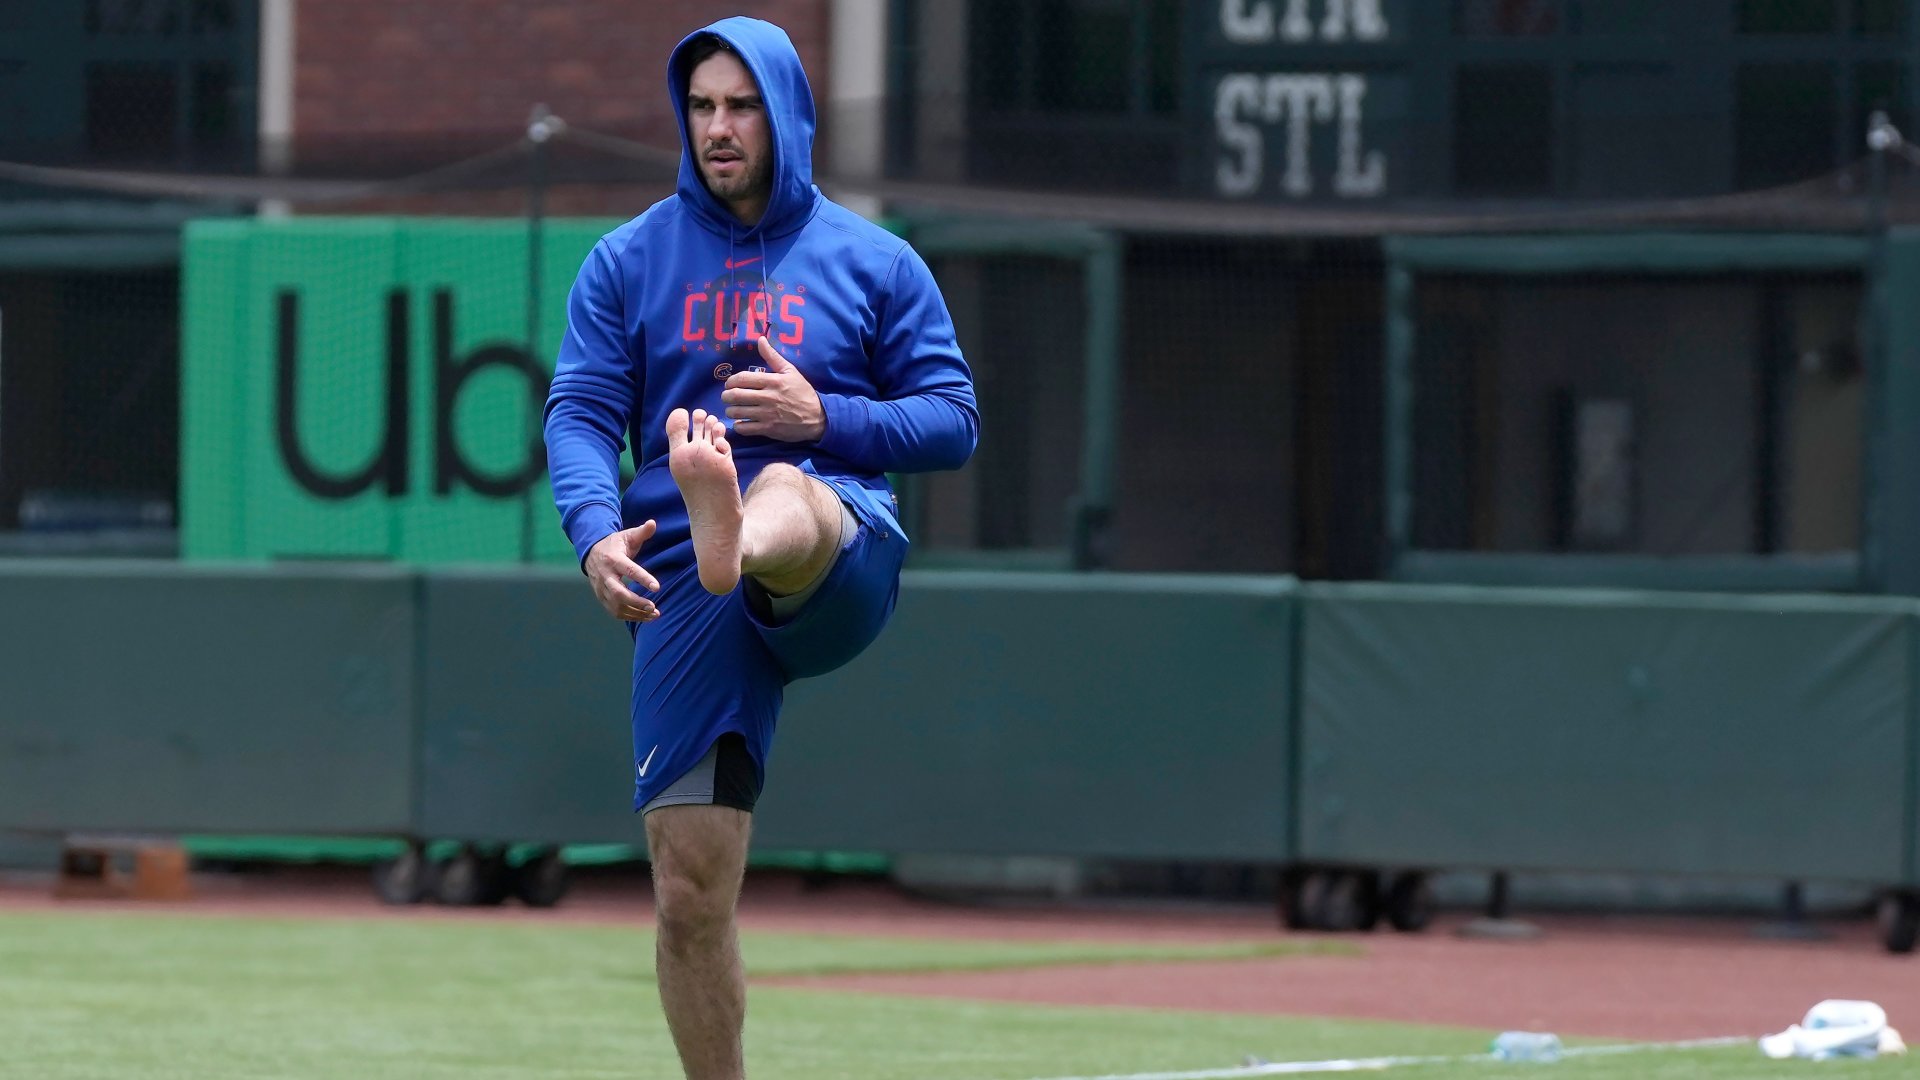 How barefoot walks, mindfulness made Giants' Joc Pederson an All